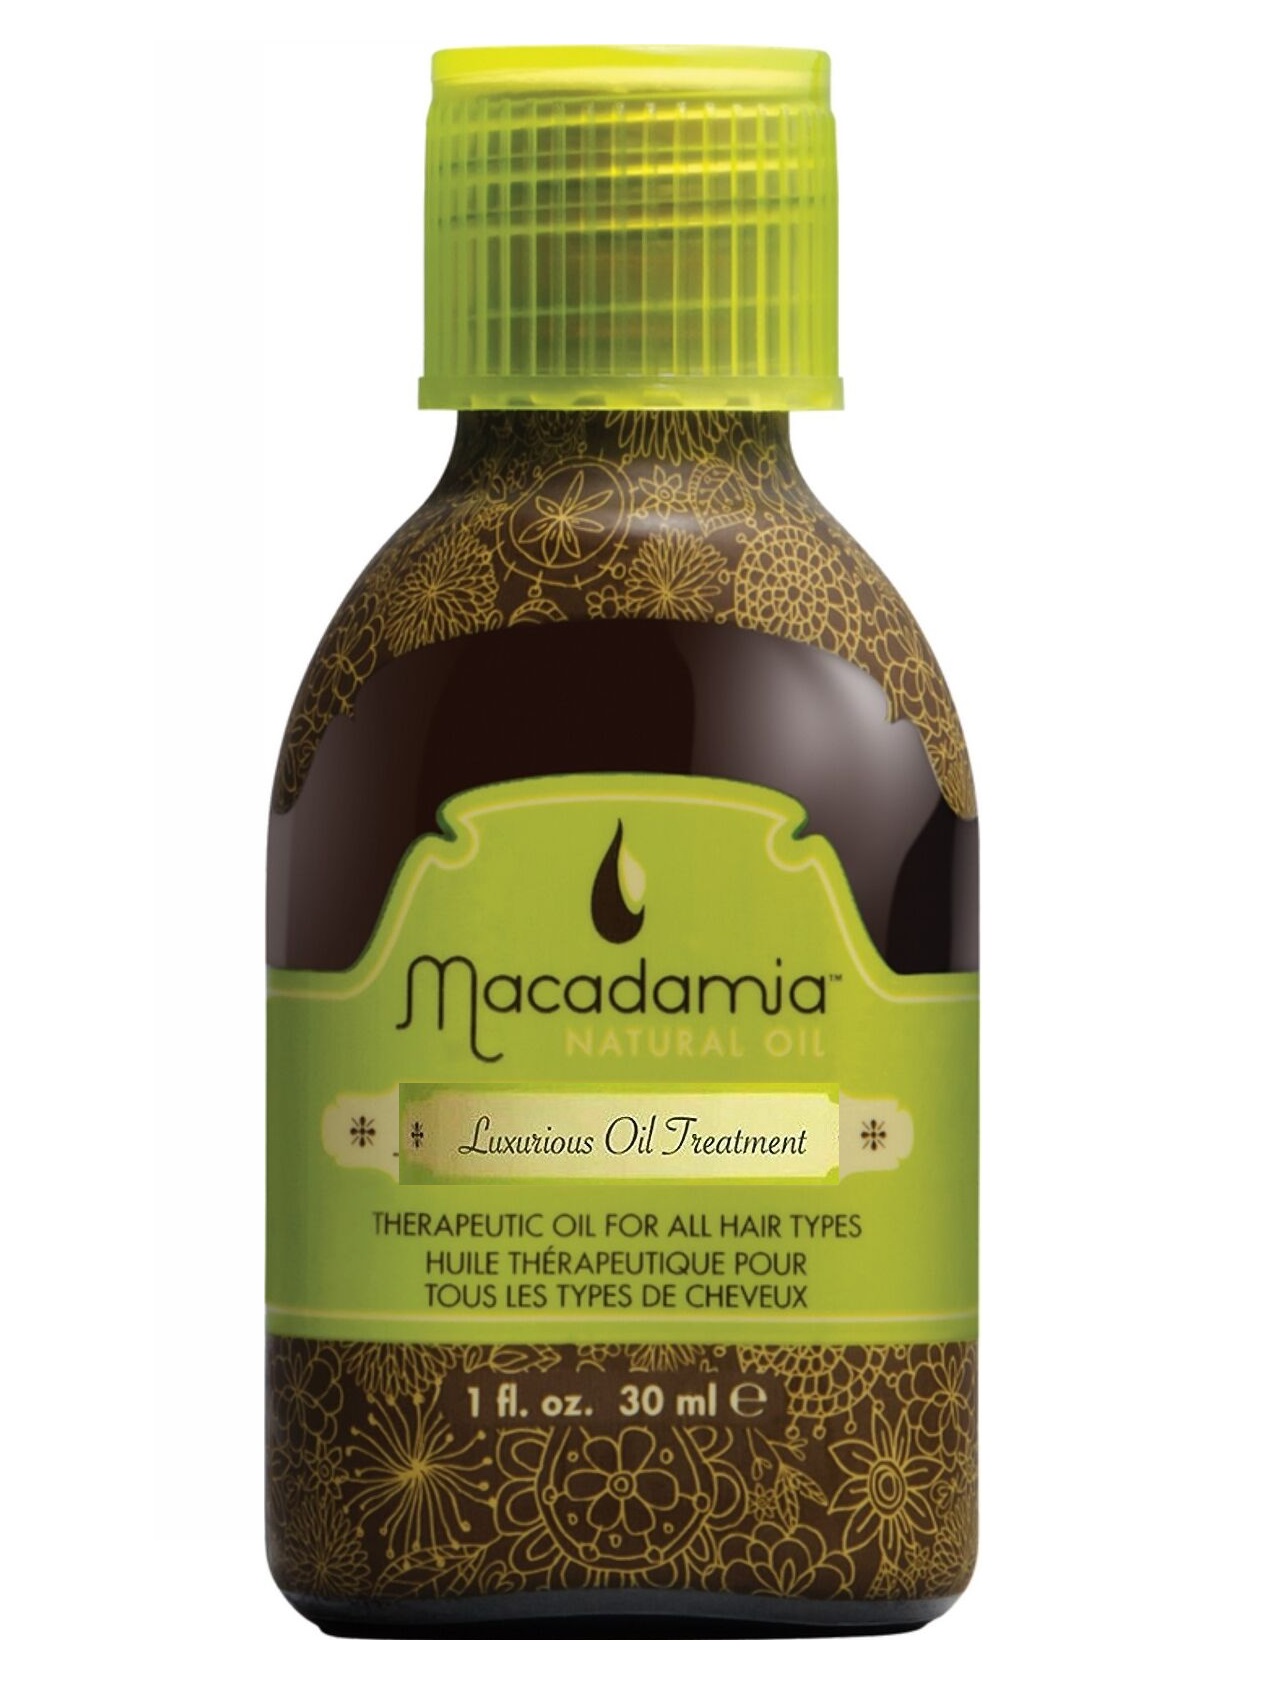 Macadamia Natural Oil Luxurious Oil Treatment, 1 Oz - image 1 of 1